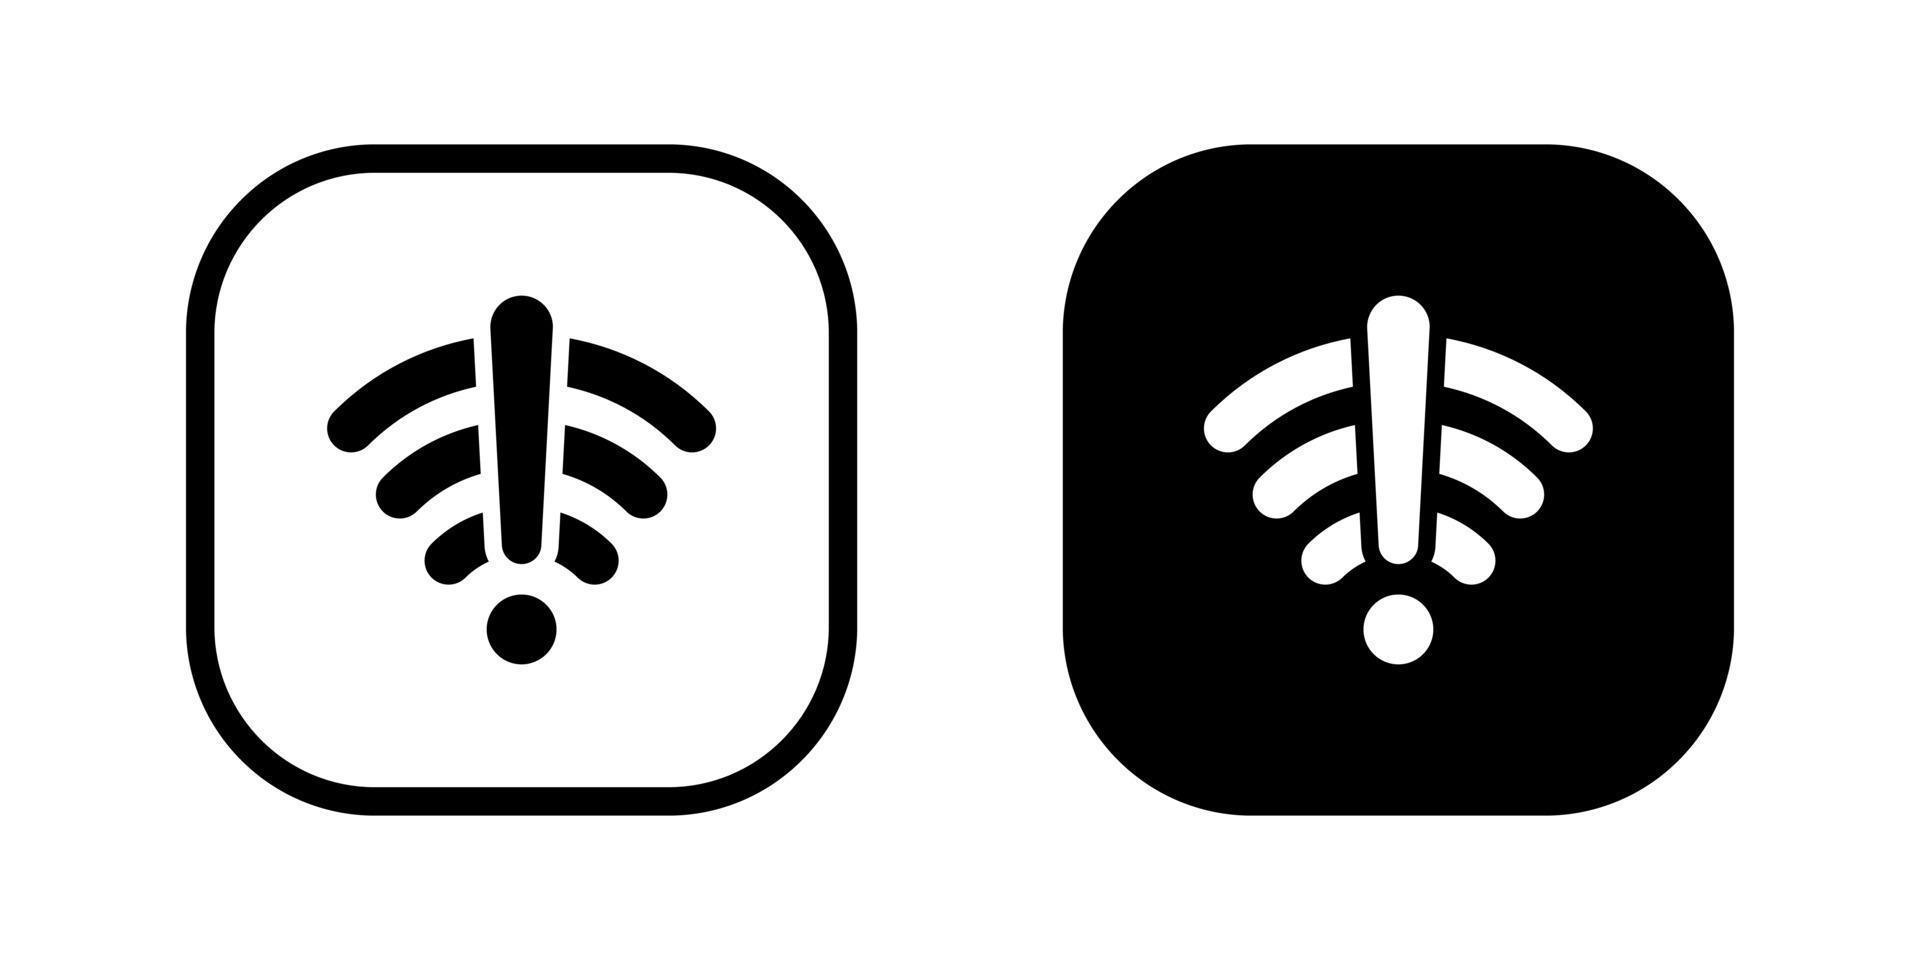 sem conexão com a internet, wifi off ícone vetor no botão quadrado